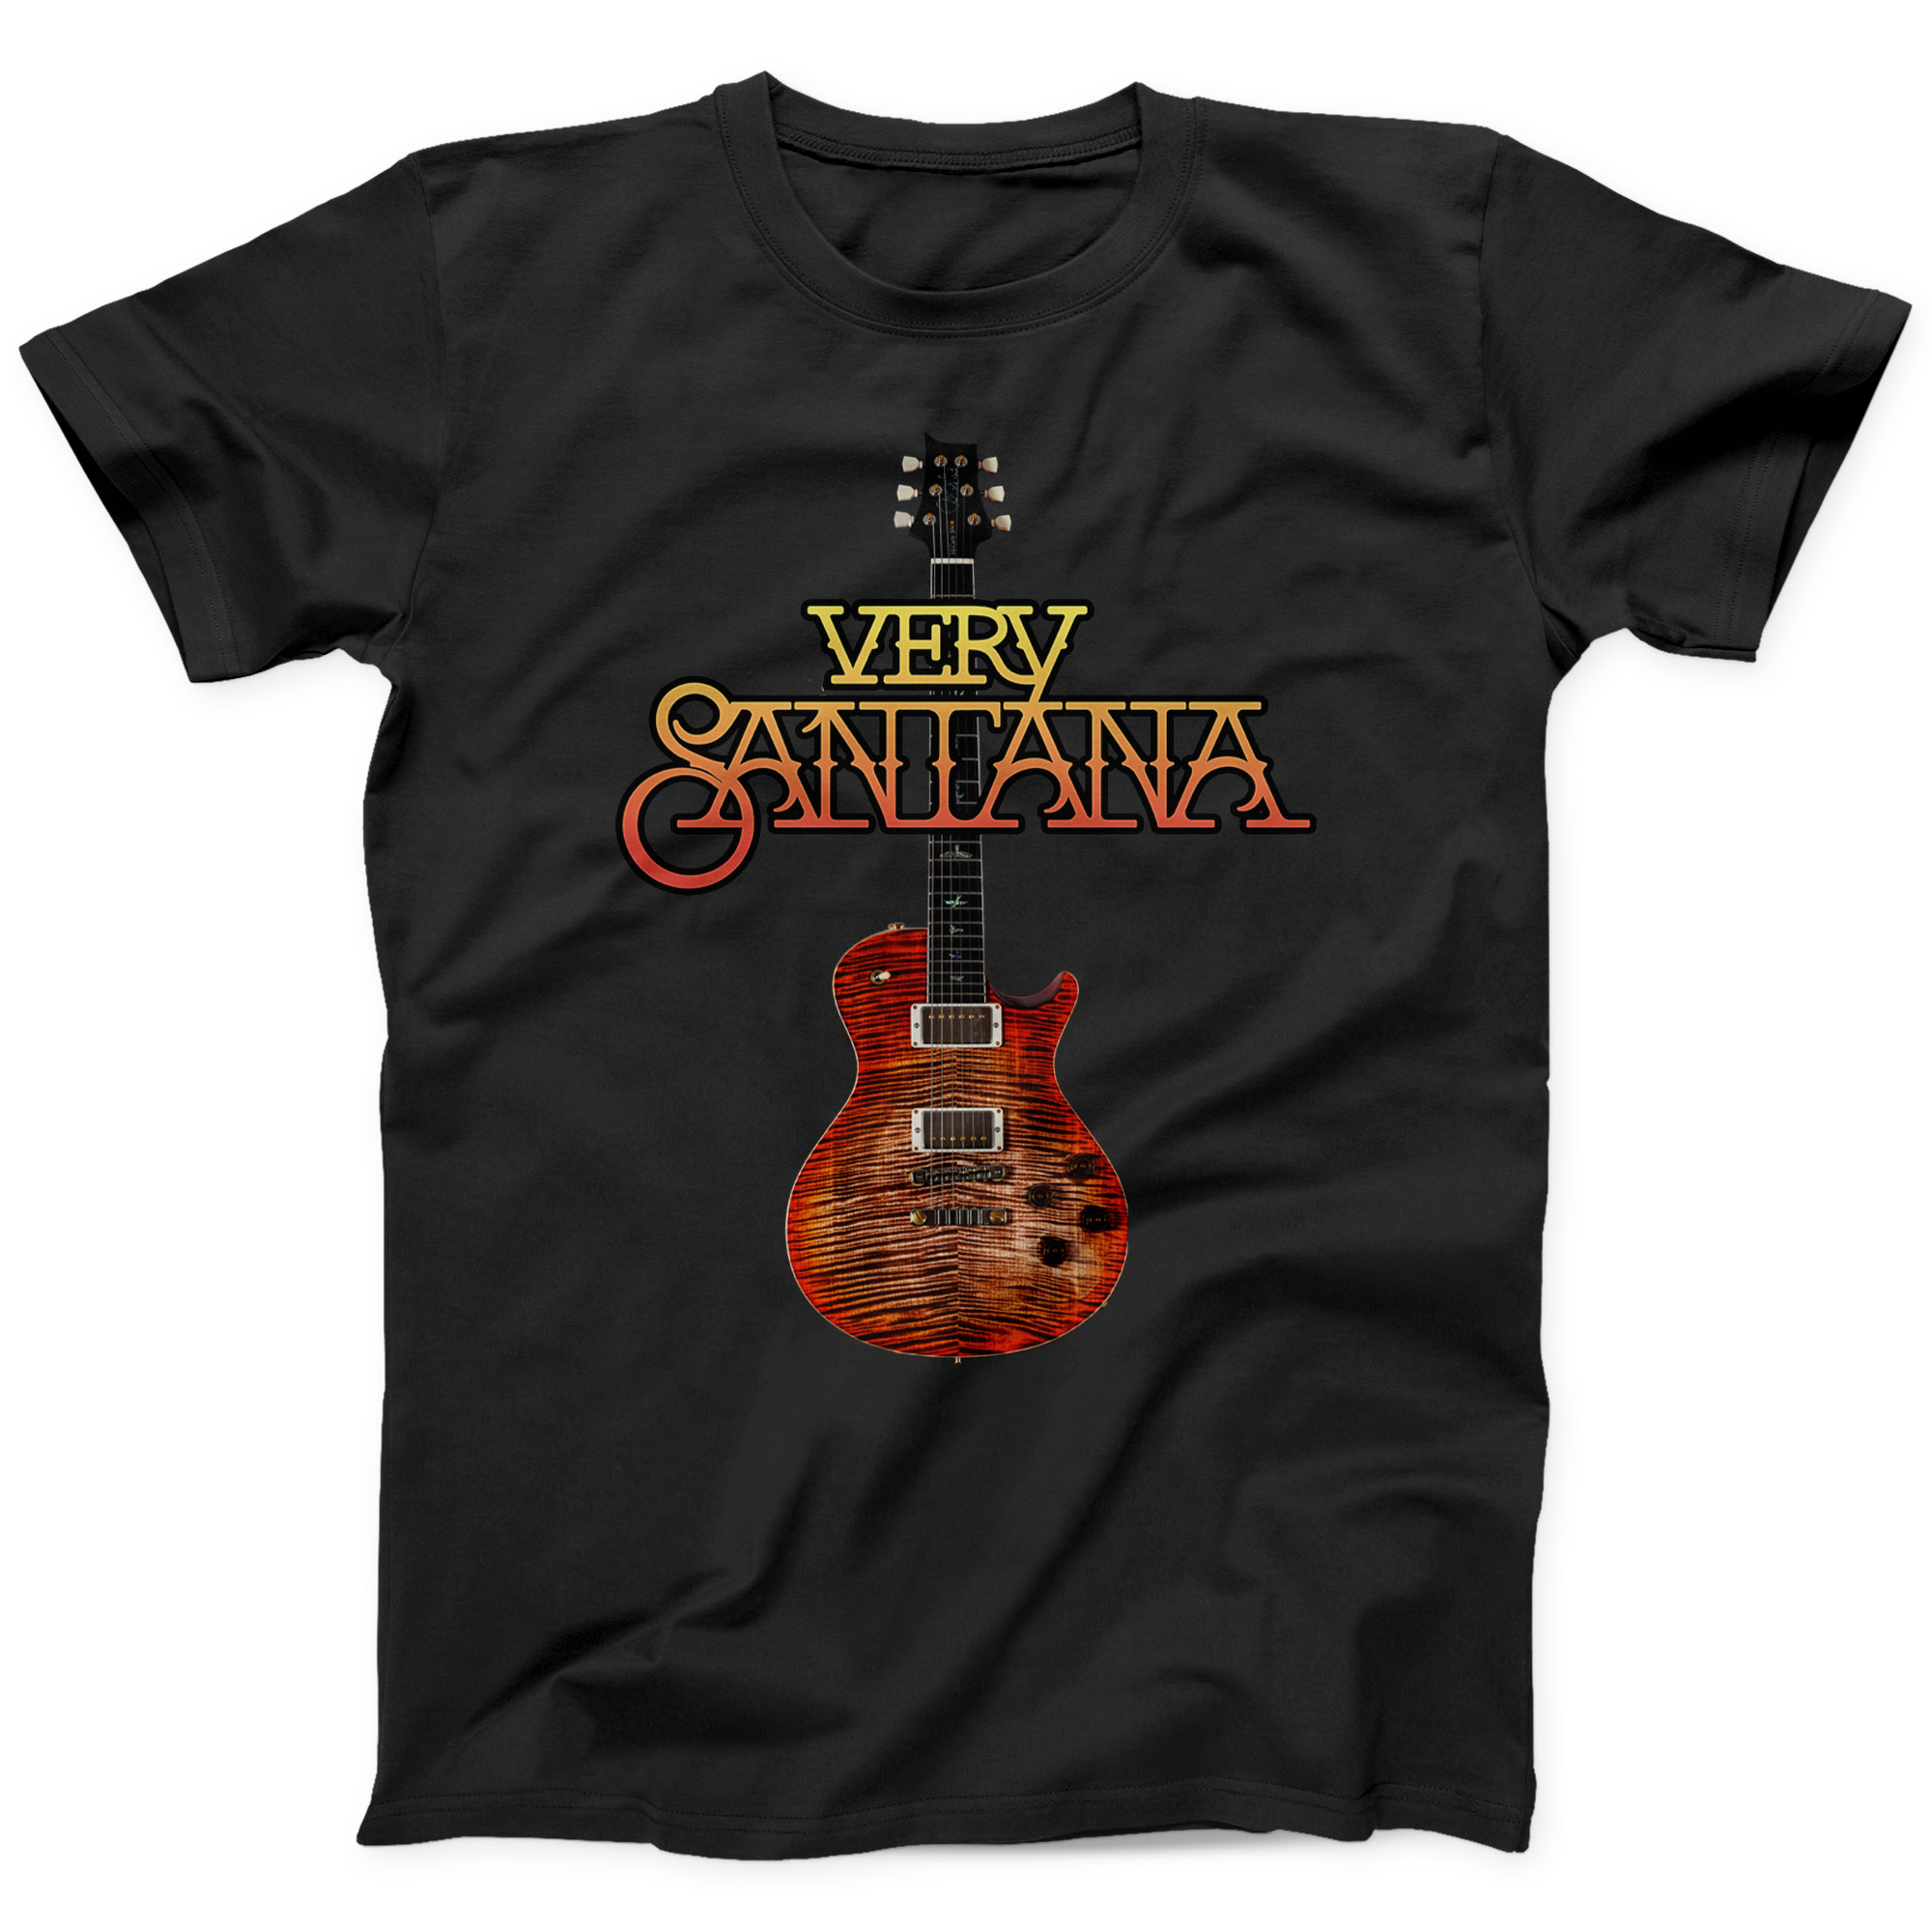 Black "Very Santana" T-Shirt